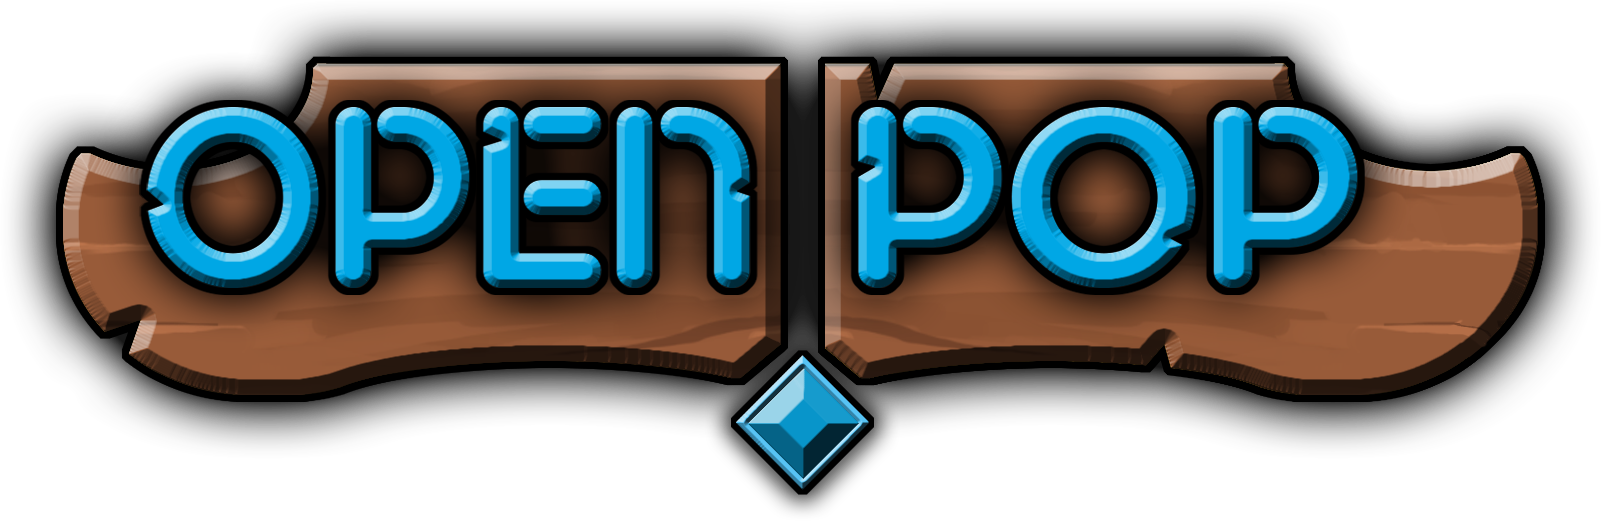 OpenPop